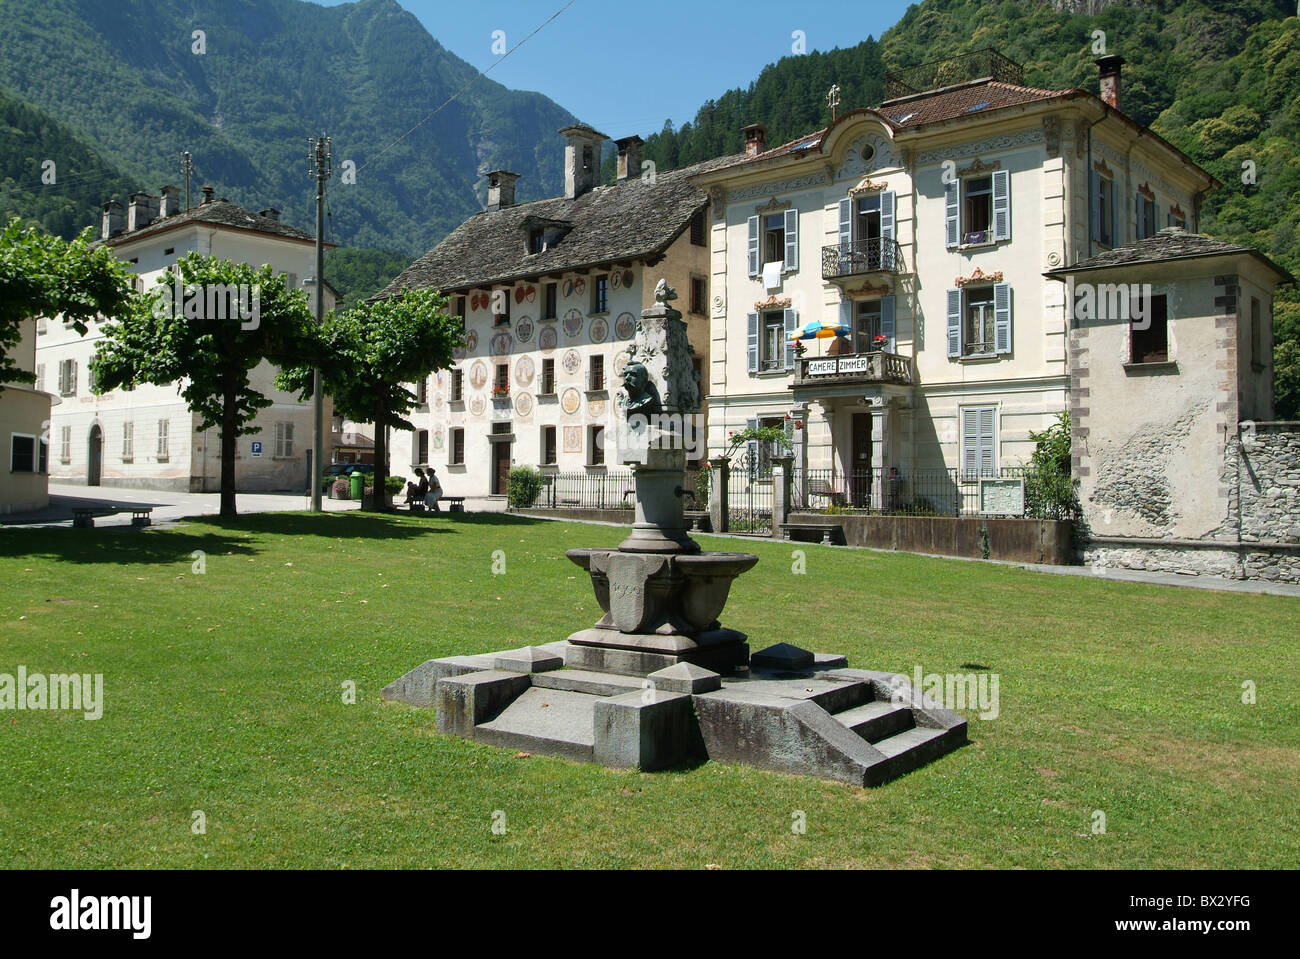 Cevio village villaggio posto le case patrizie pozzi case case Valle Maggia Svizzera Europa canton Ticin Foto Stock